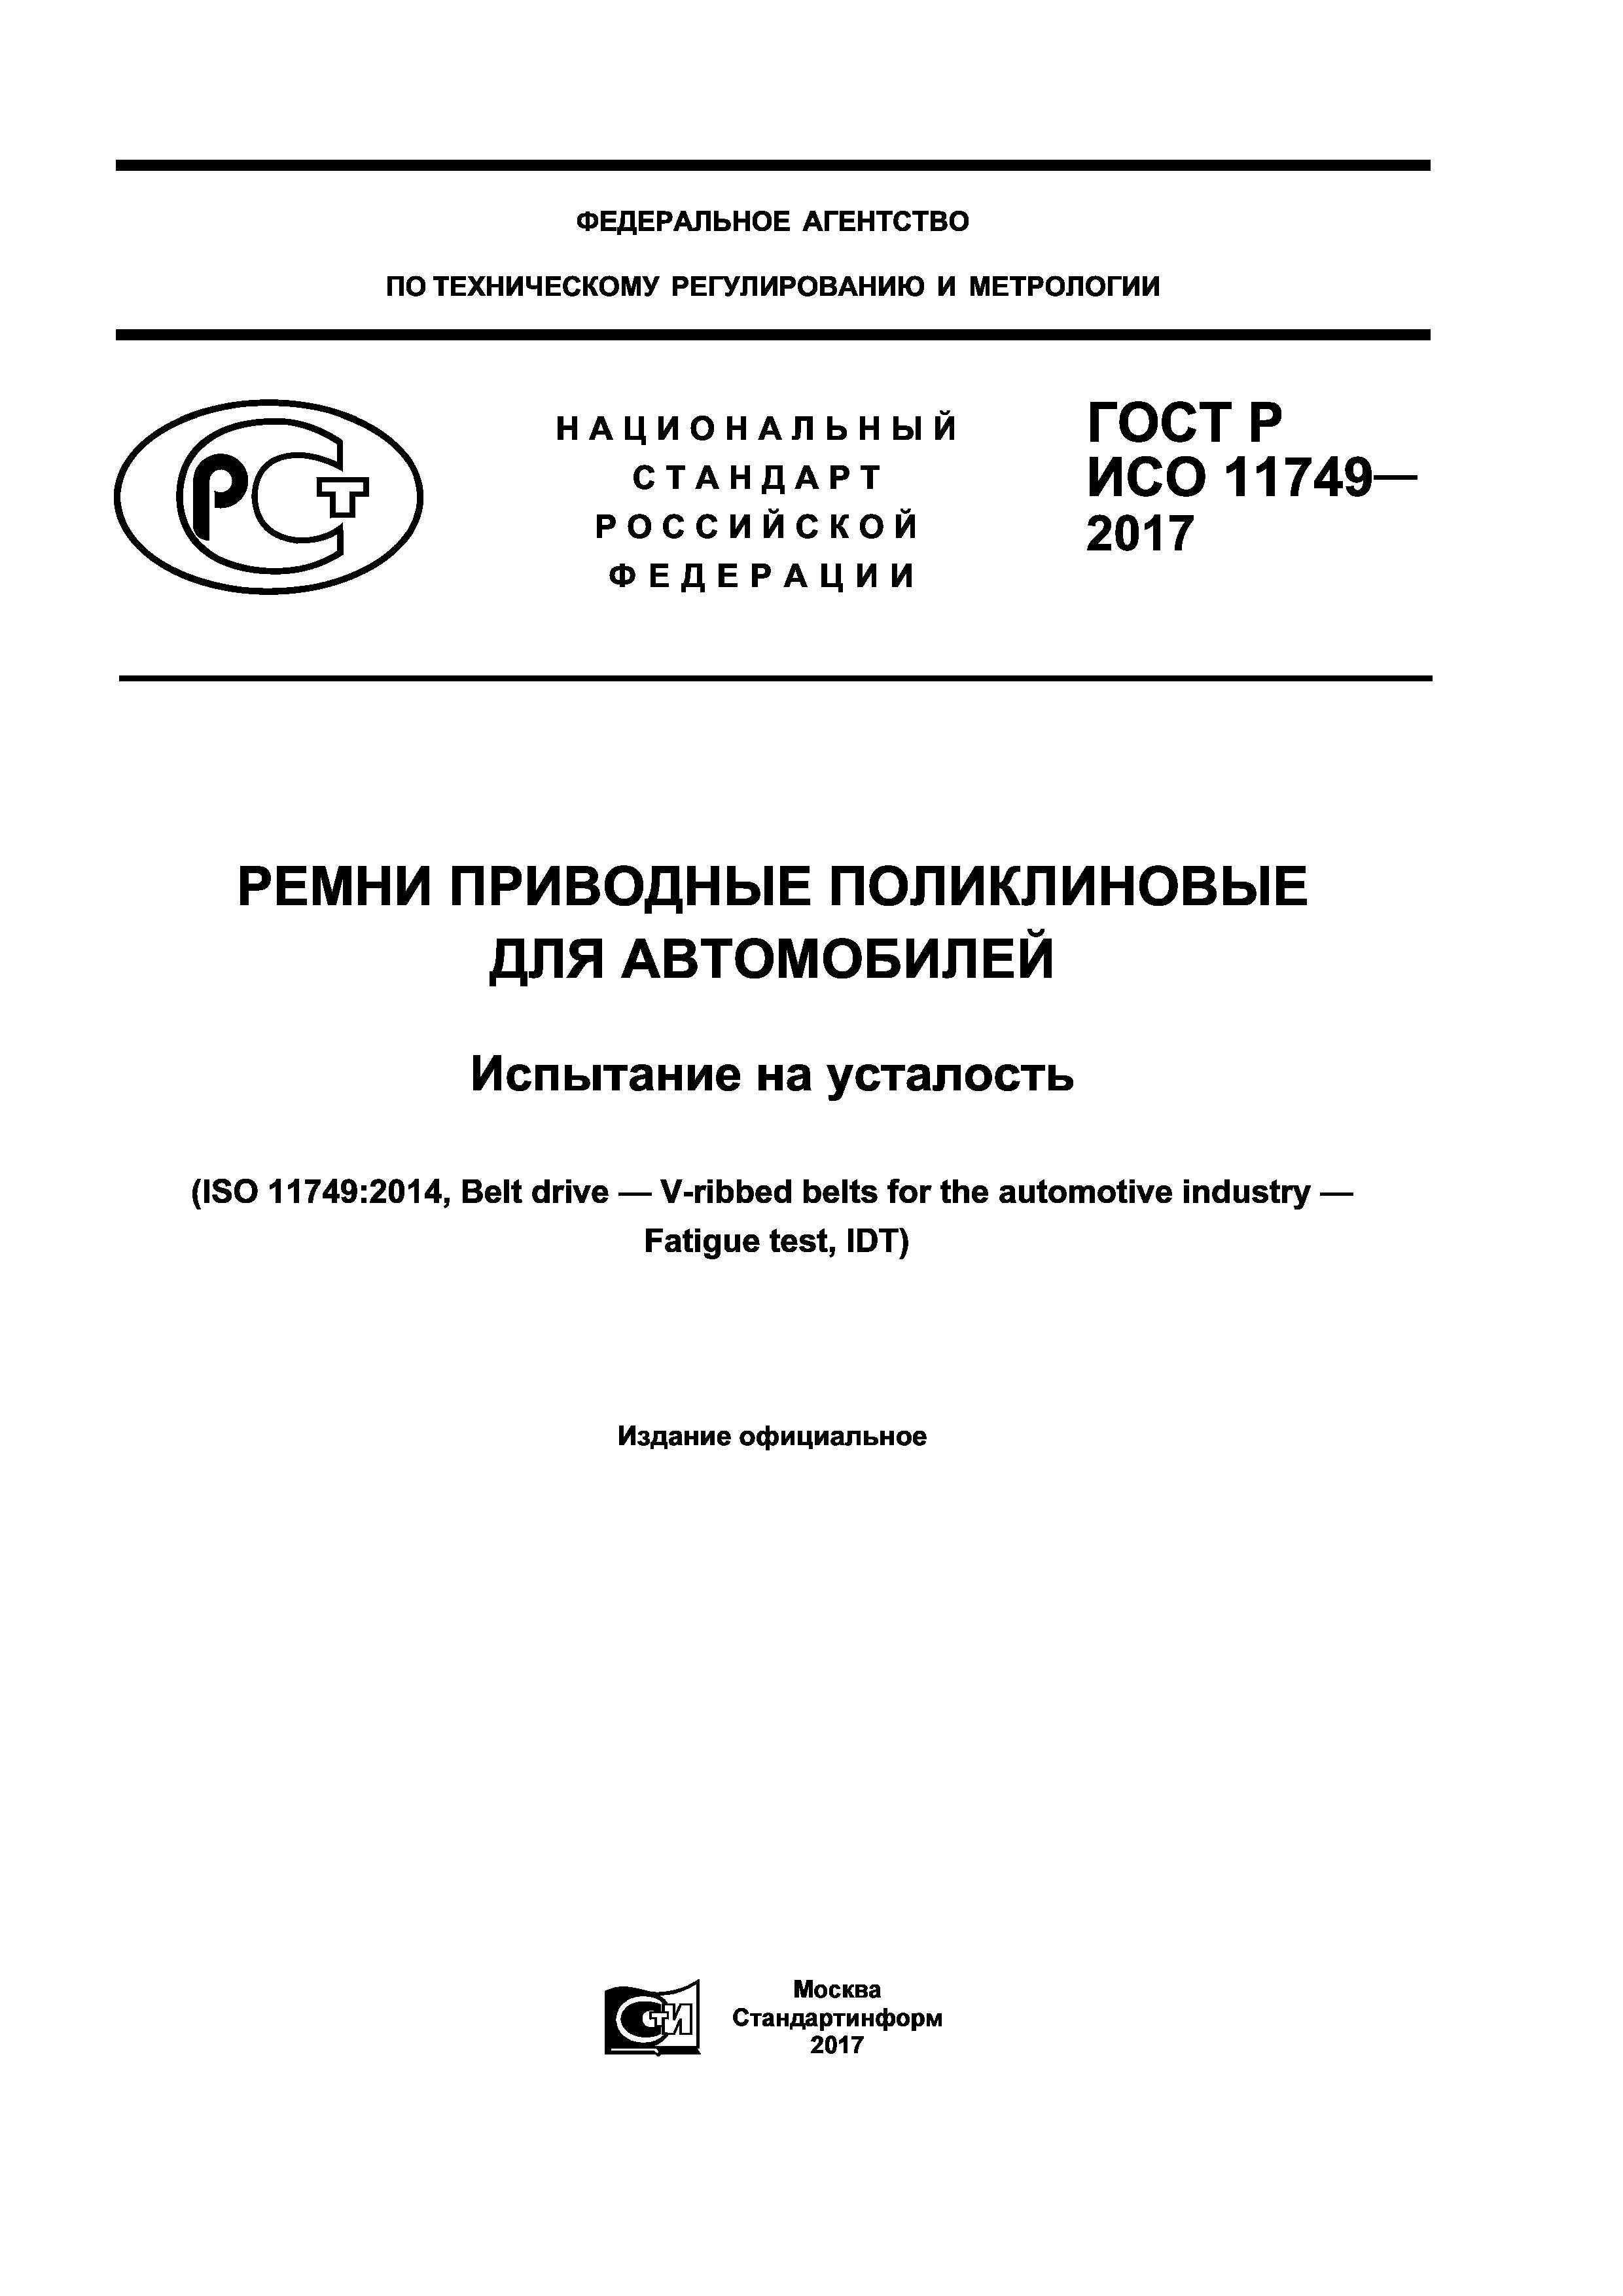 ГОСТ Р ИСО 11749-2017